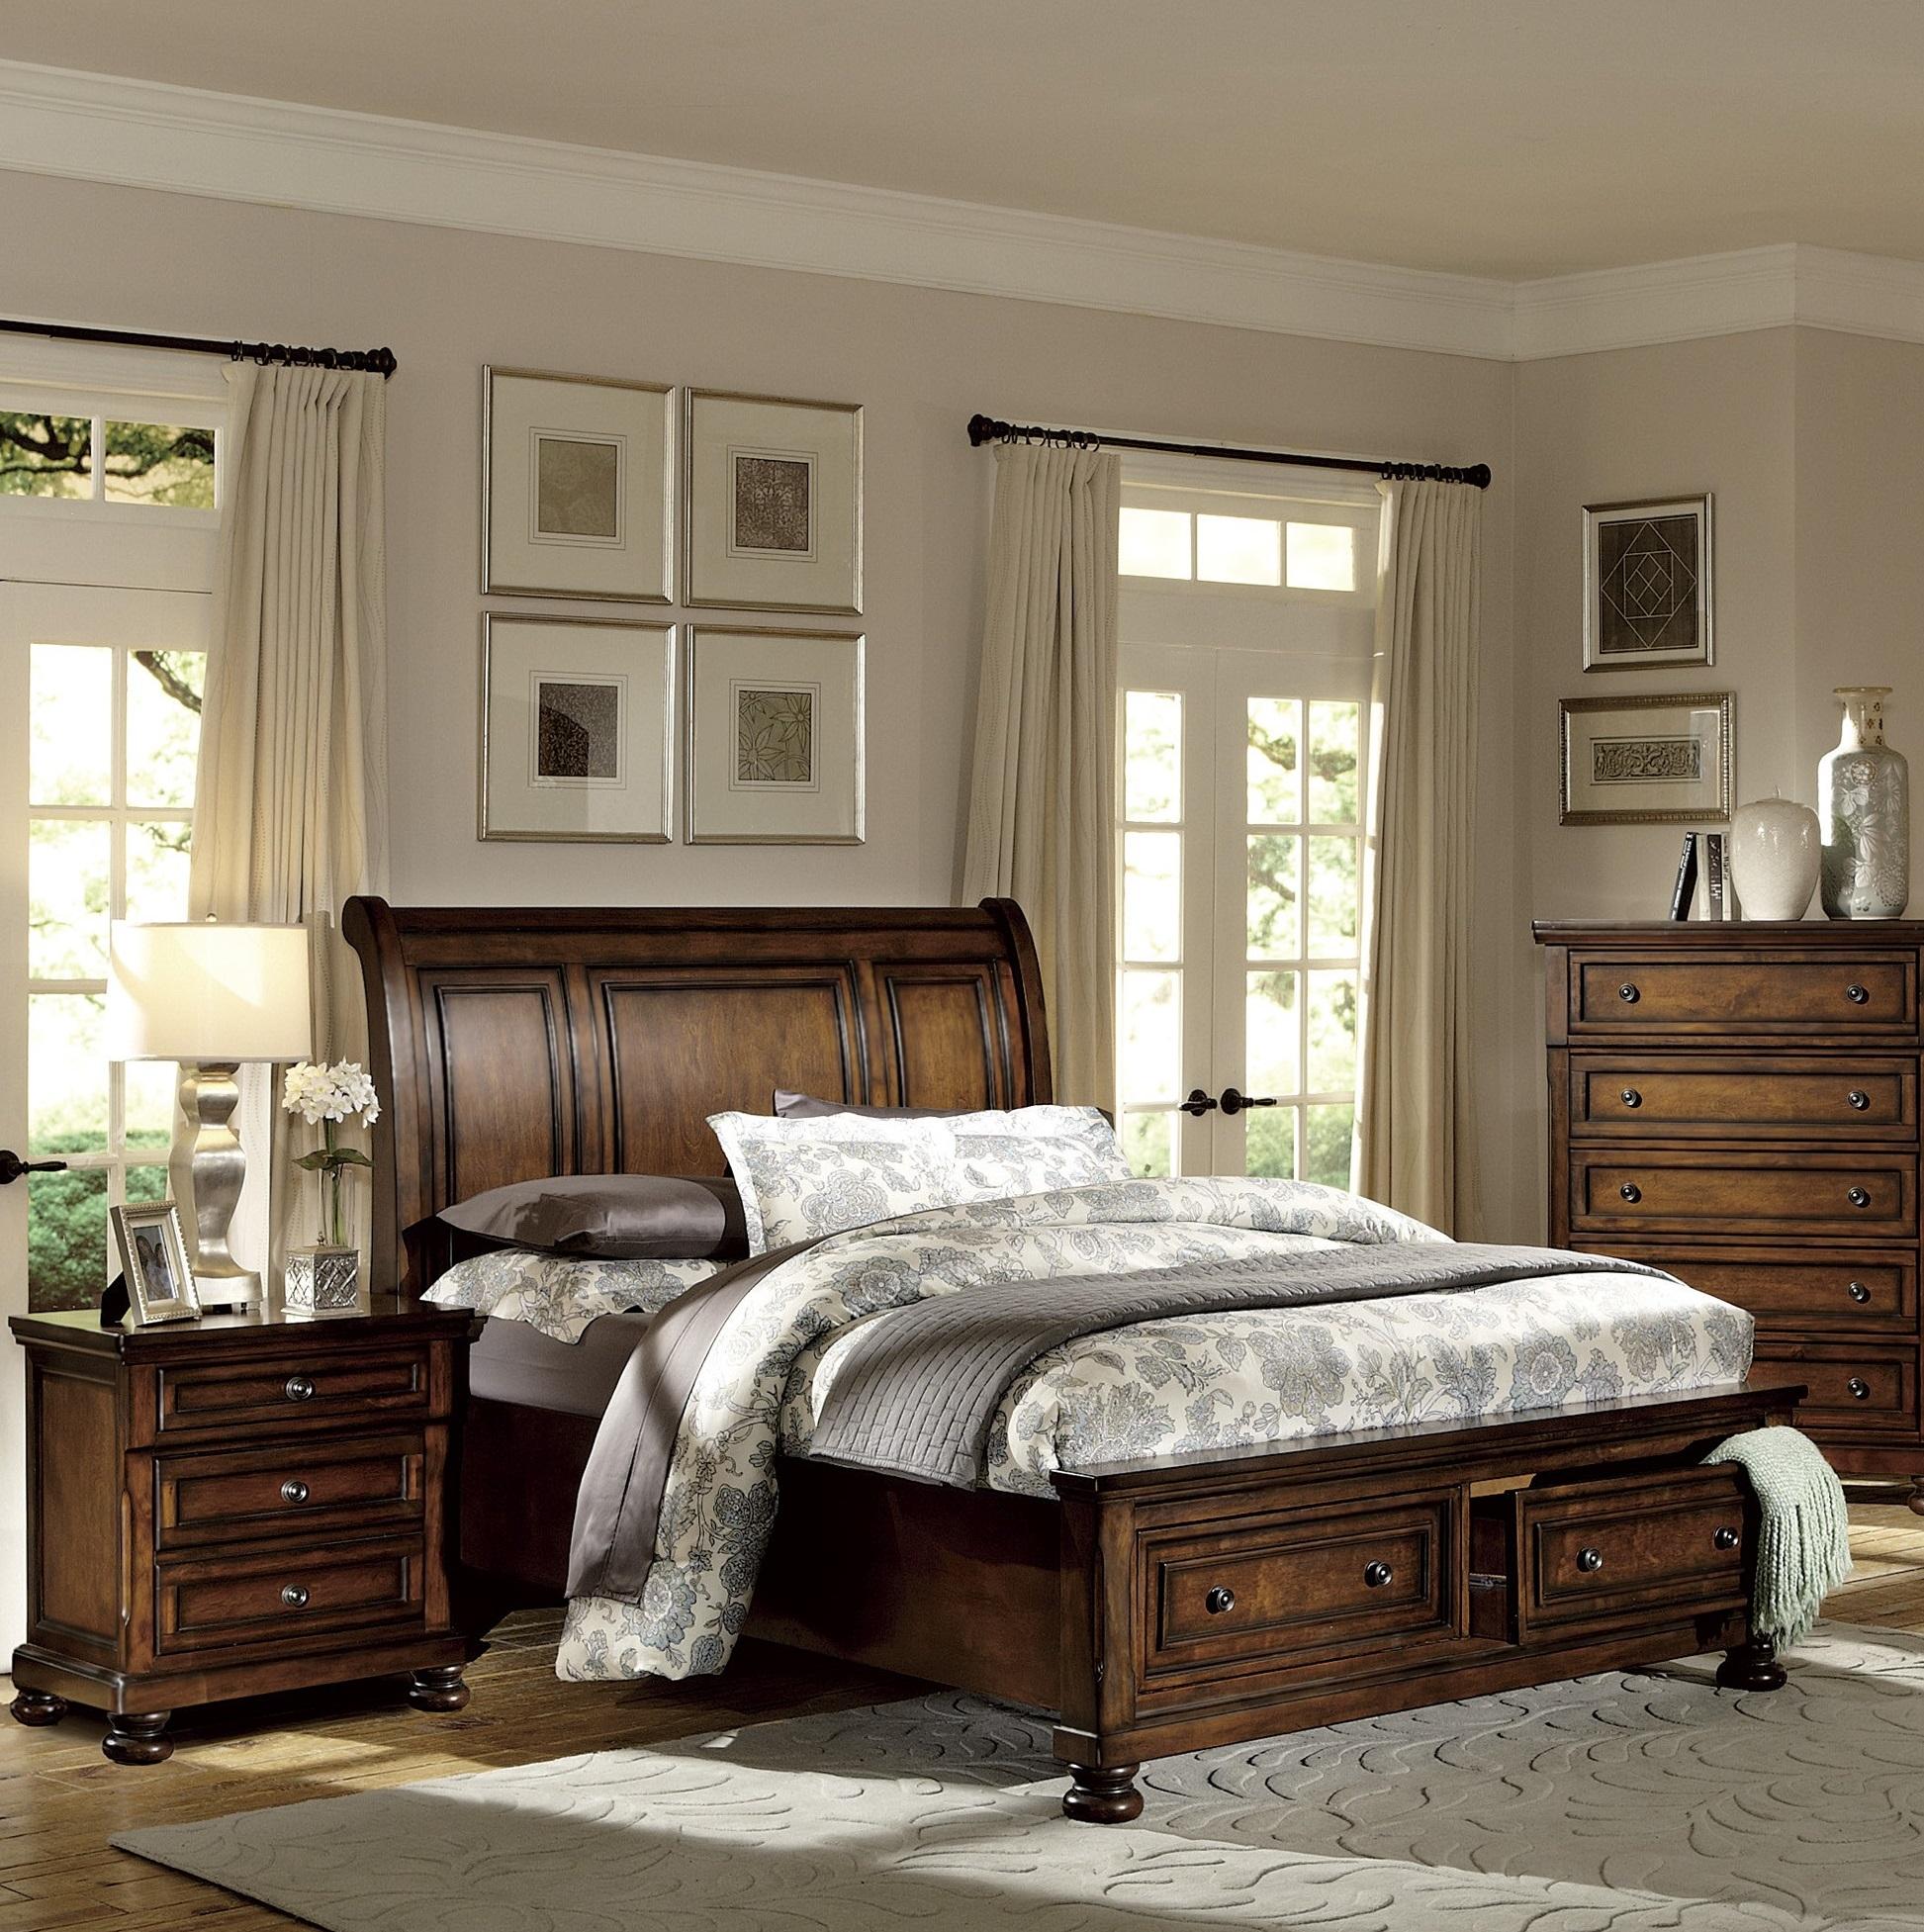 

    
Traditional Brown Cherry Wood King Bedroom Set 3pcs Homelegance 2159K-1EK* Cumberland
